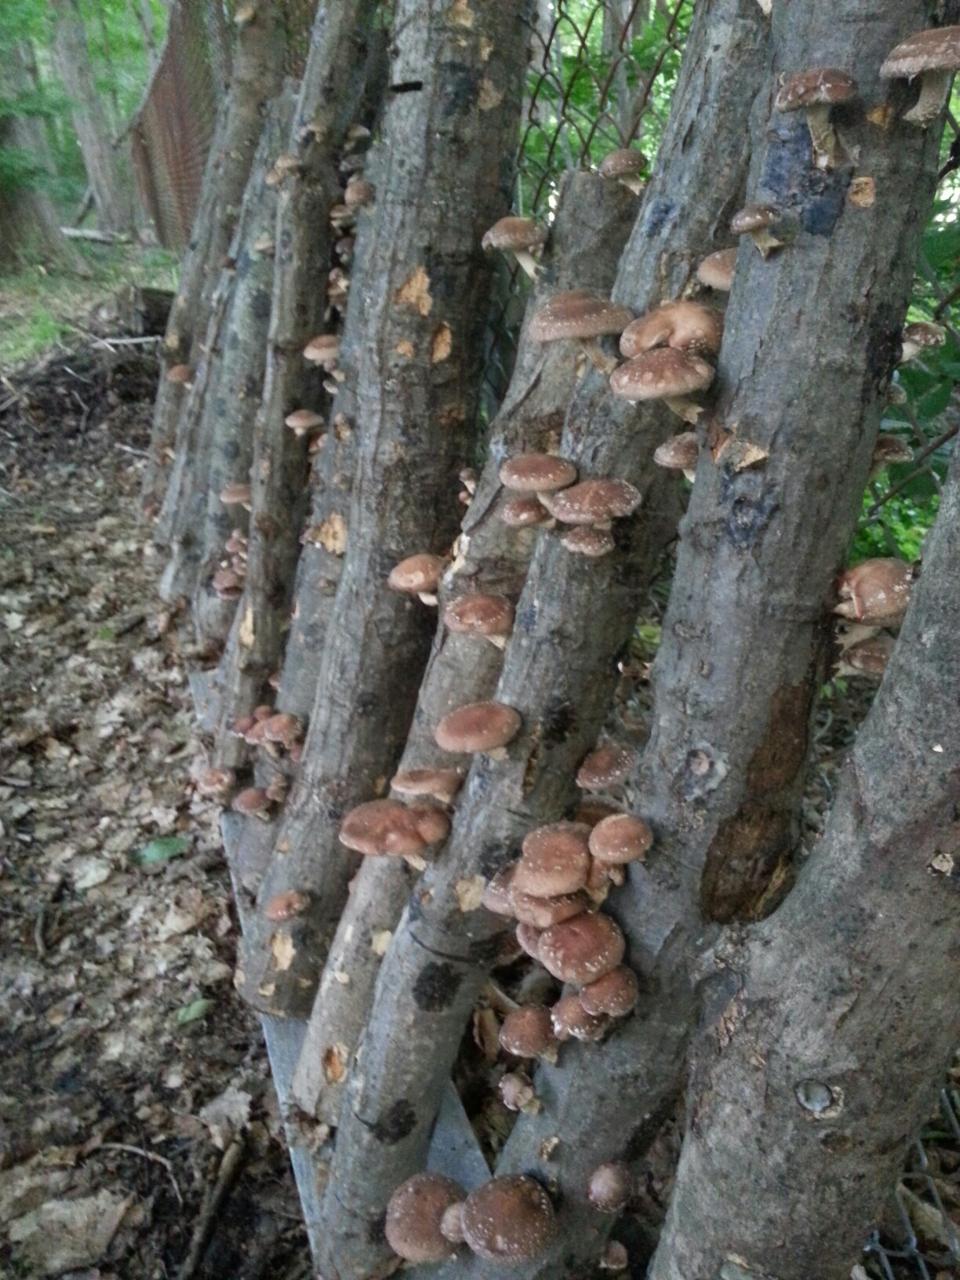 shiitake mushroom plugs